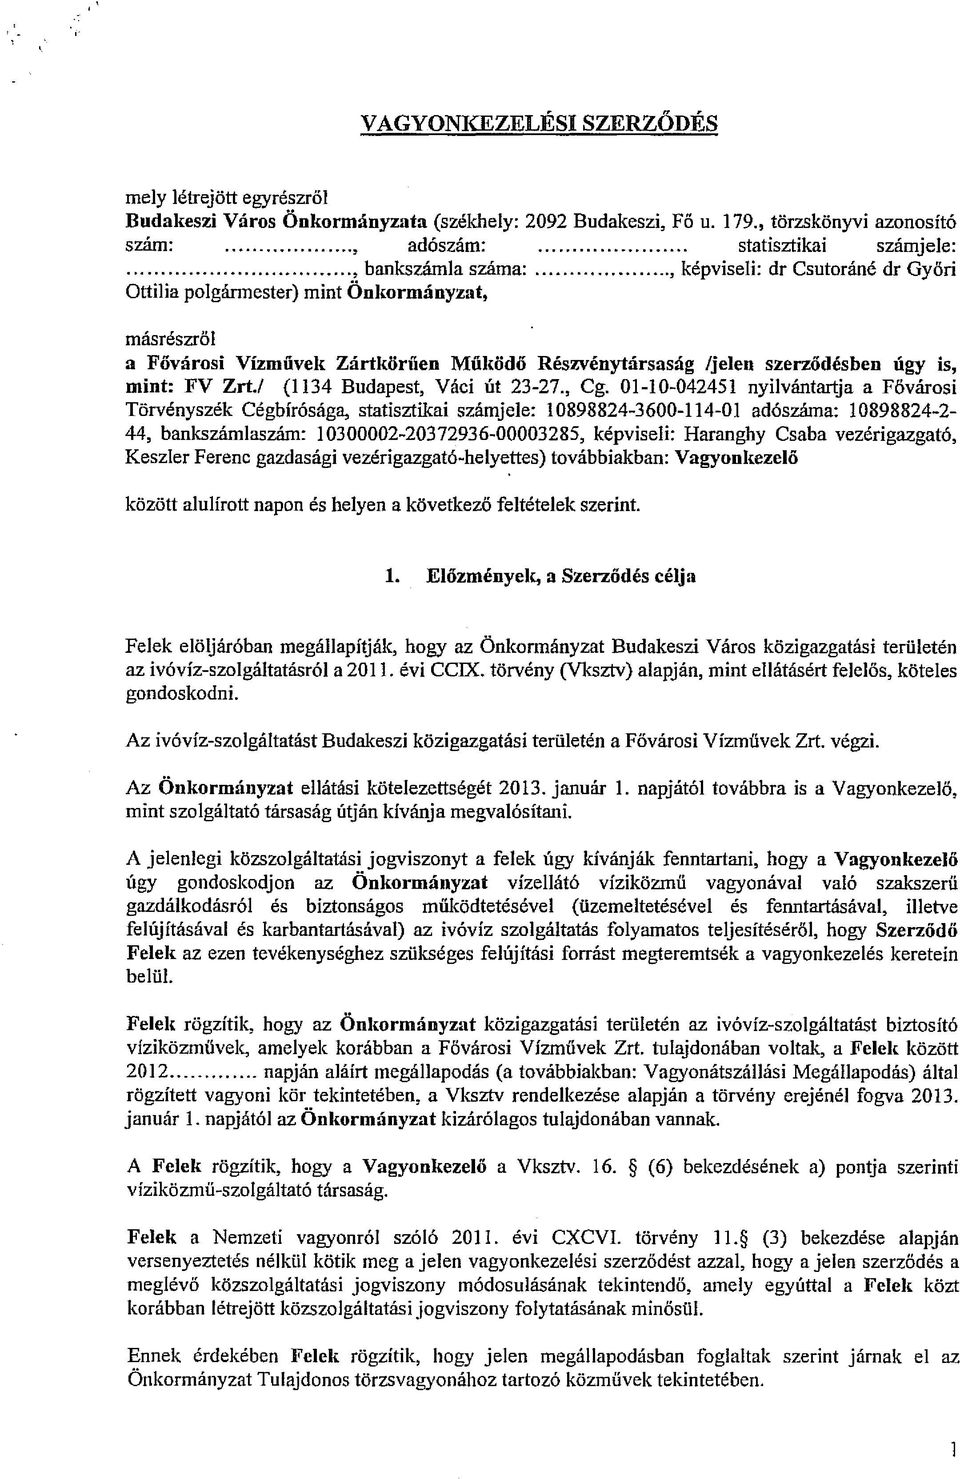 .., képviseli: dr Csutoráné dr Győri Ottilia polgármester) mint Önkormányzat, másrészről a Fővárosi Vízművek Zártkörűen Működő Részvénytársaság /jelen szerződésben úgy is, mint: FV Zrt,/ (1134